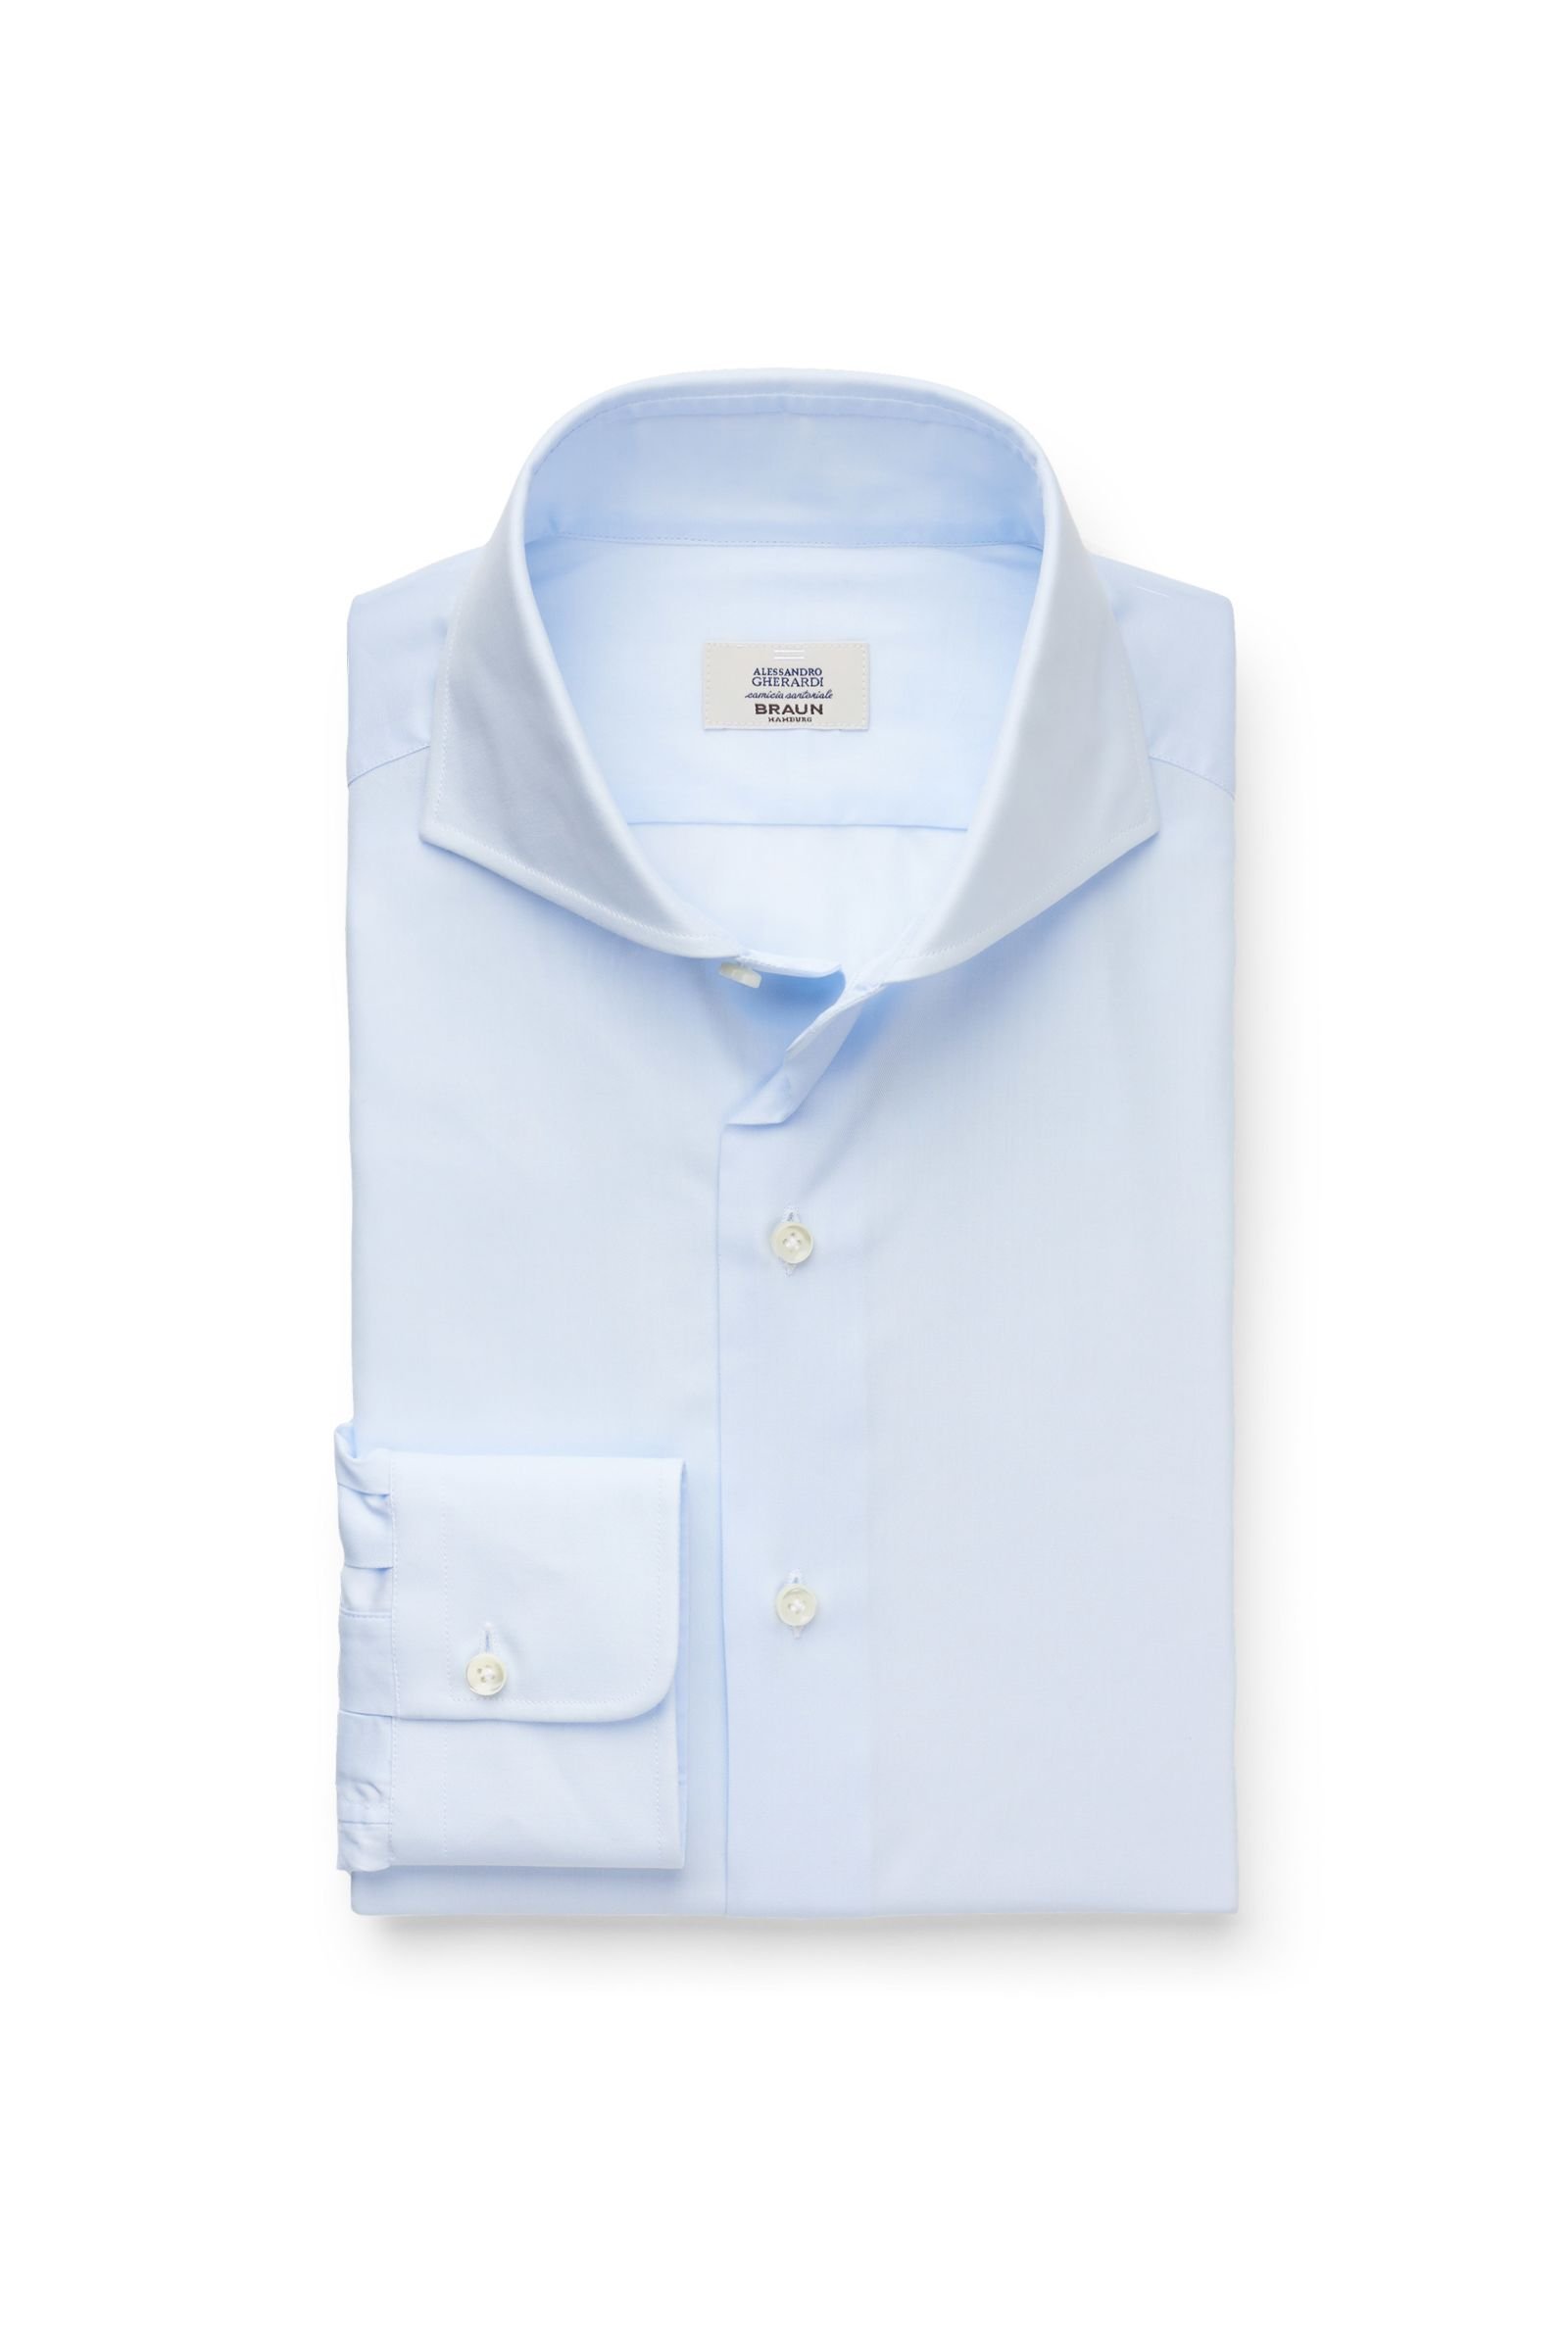 Business shirt shark collar light blue